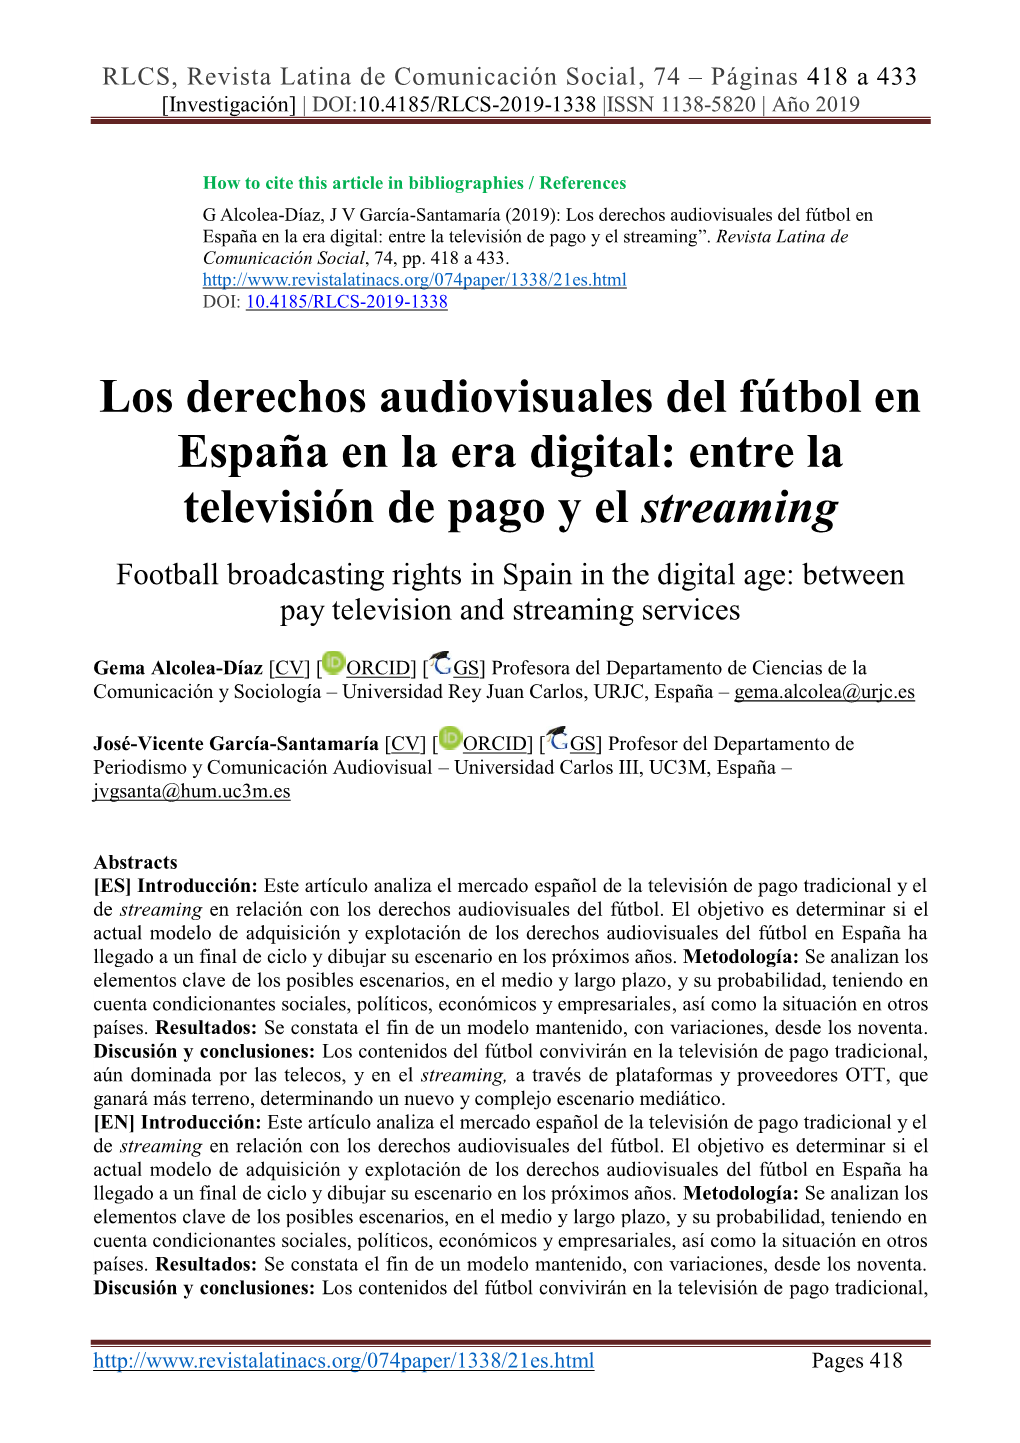 Los Derechos Audiovisuales Del Fútbol En España En La Era Digital: Entre La Televisión De Pago Y El Streaming”